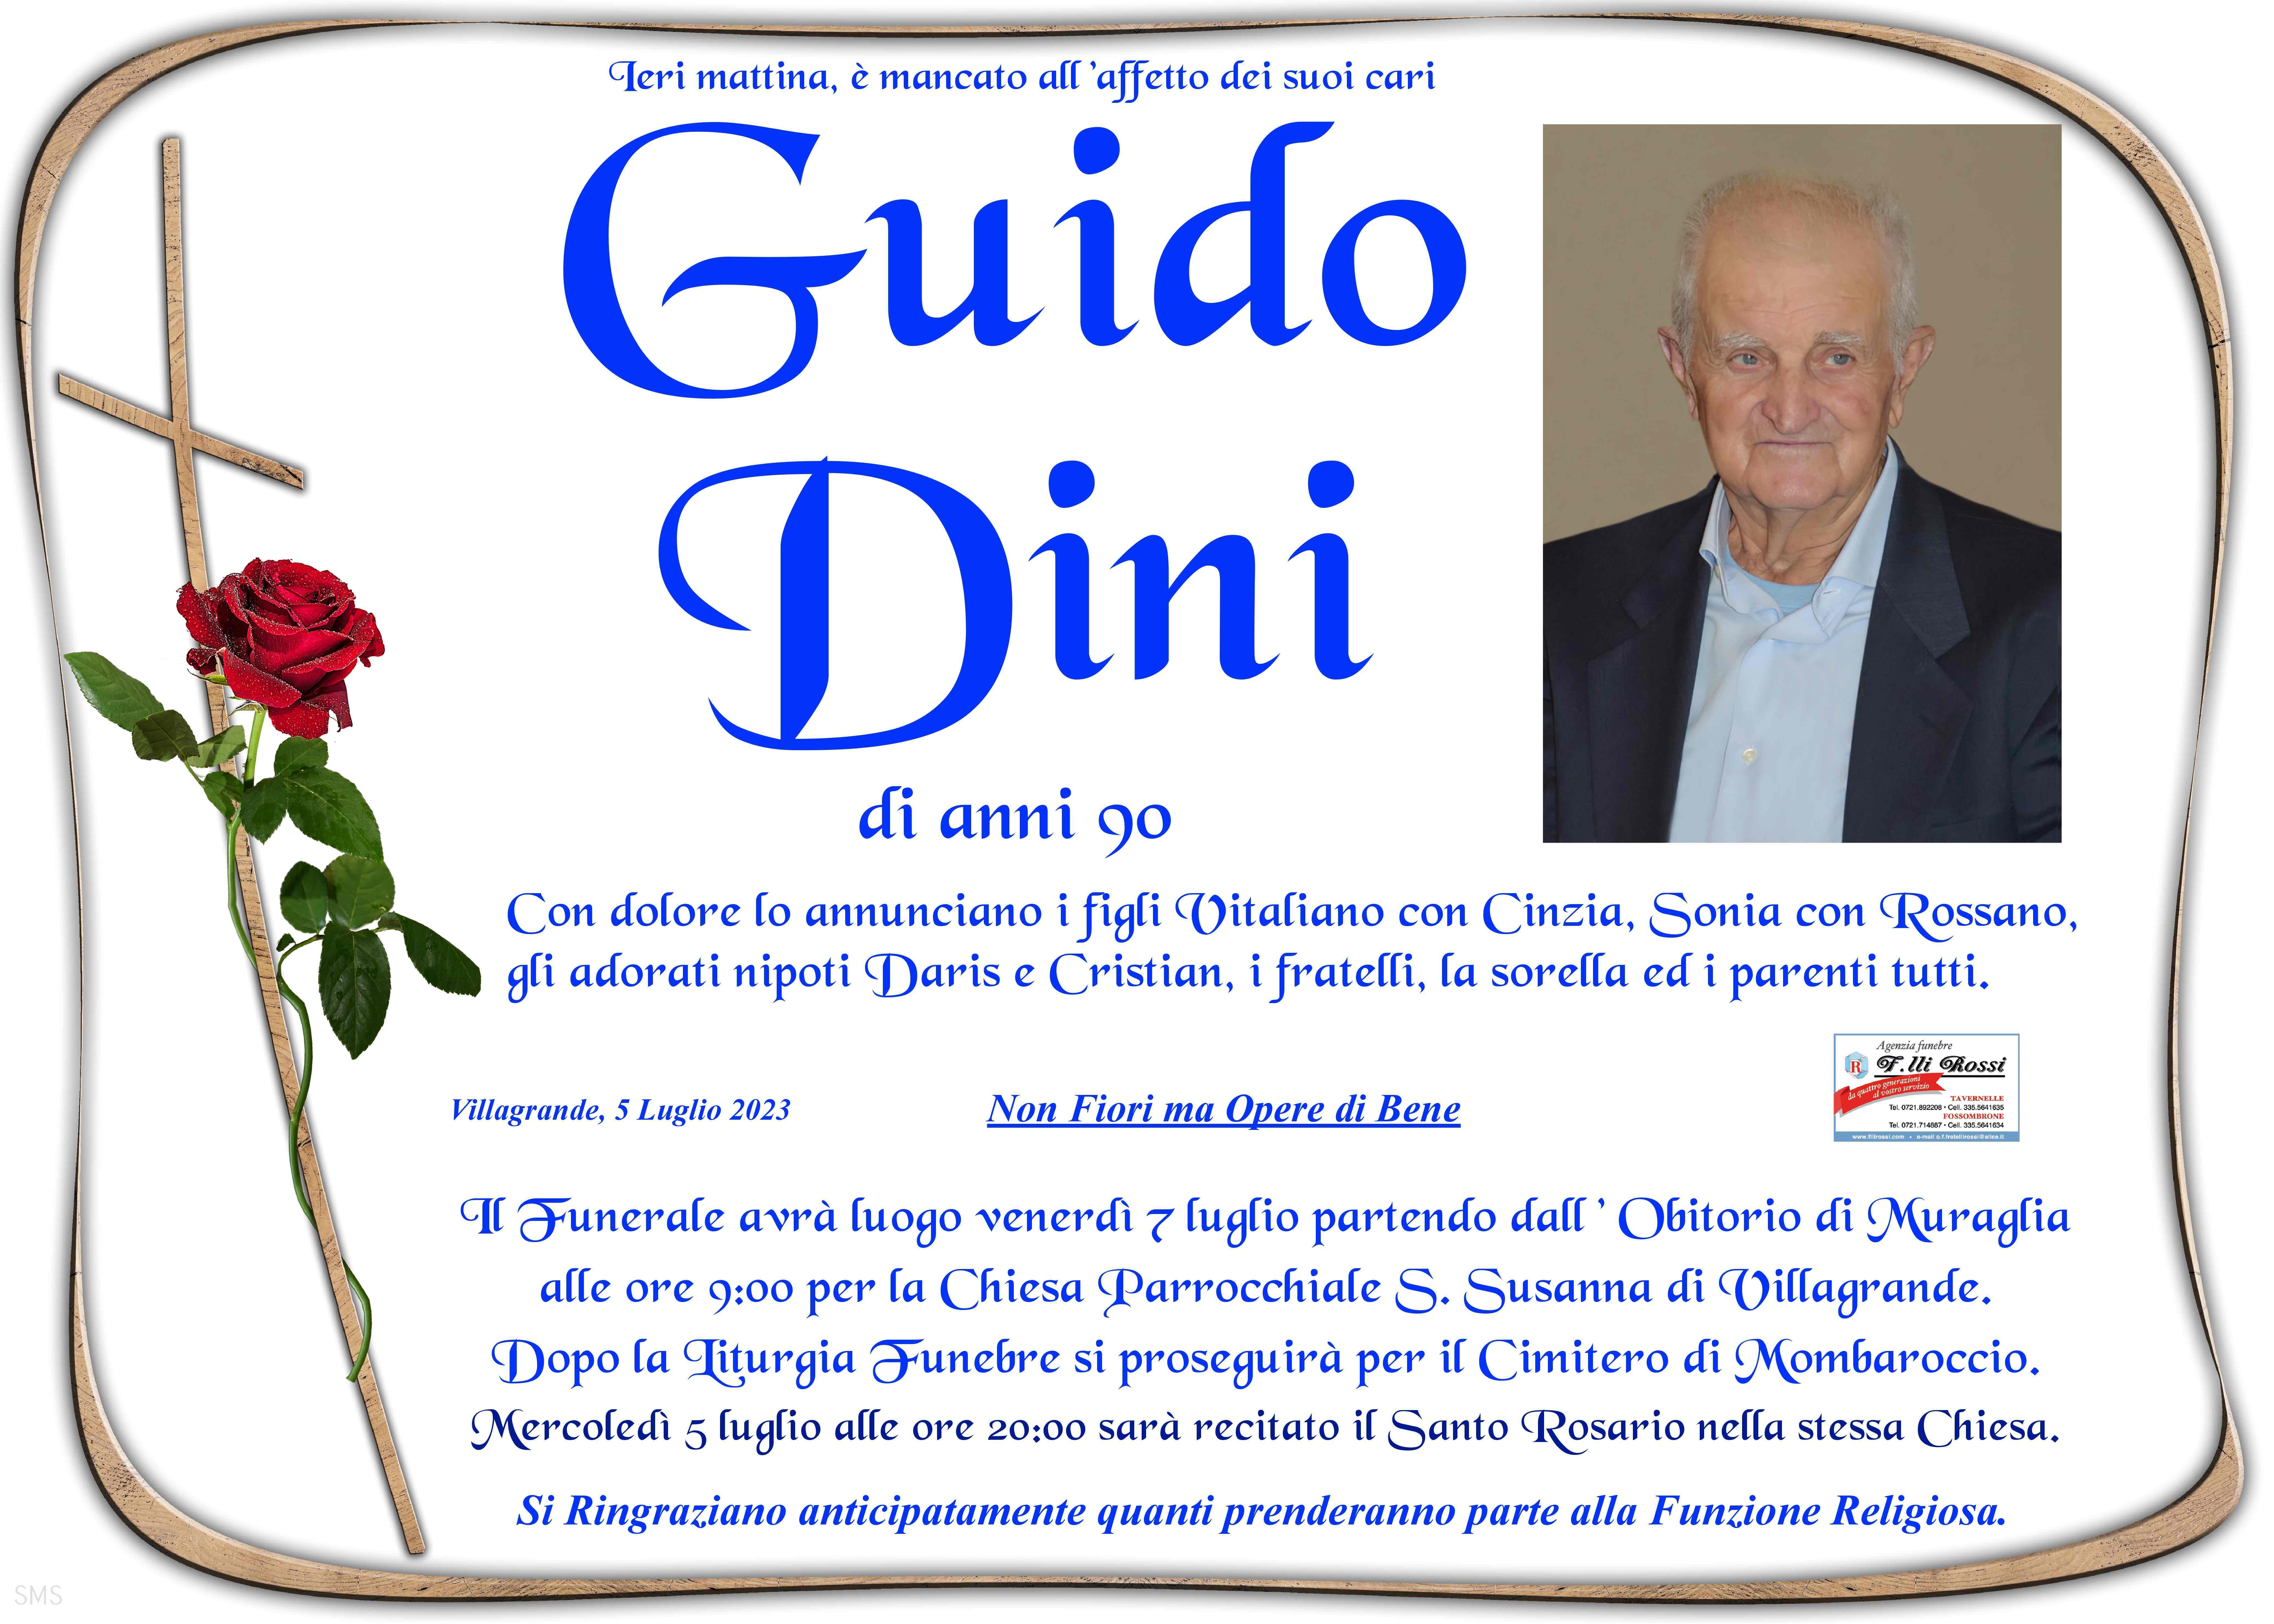 Guido Dini